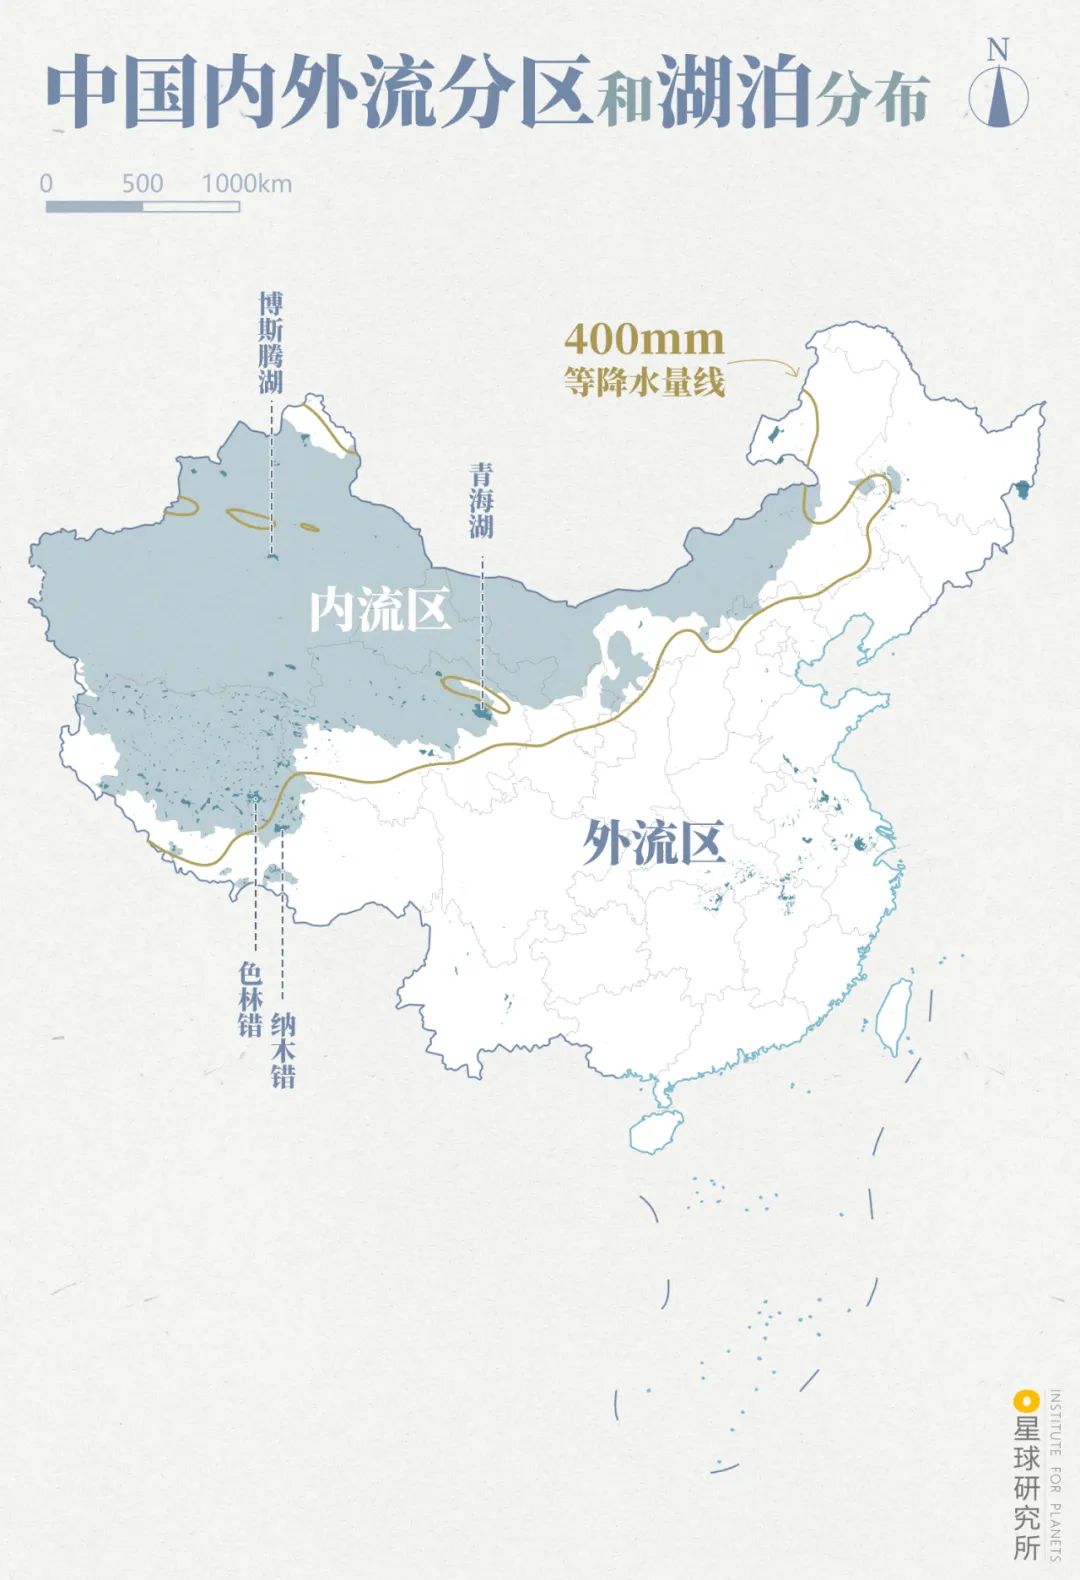 形成 外流湖 西北侧距海远,降水少 多形成 内流湖 (中国内外流分区